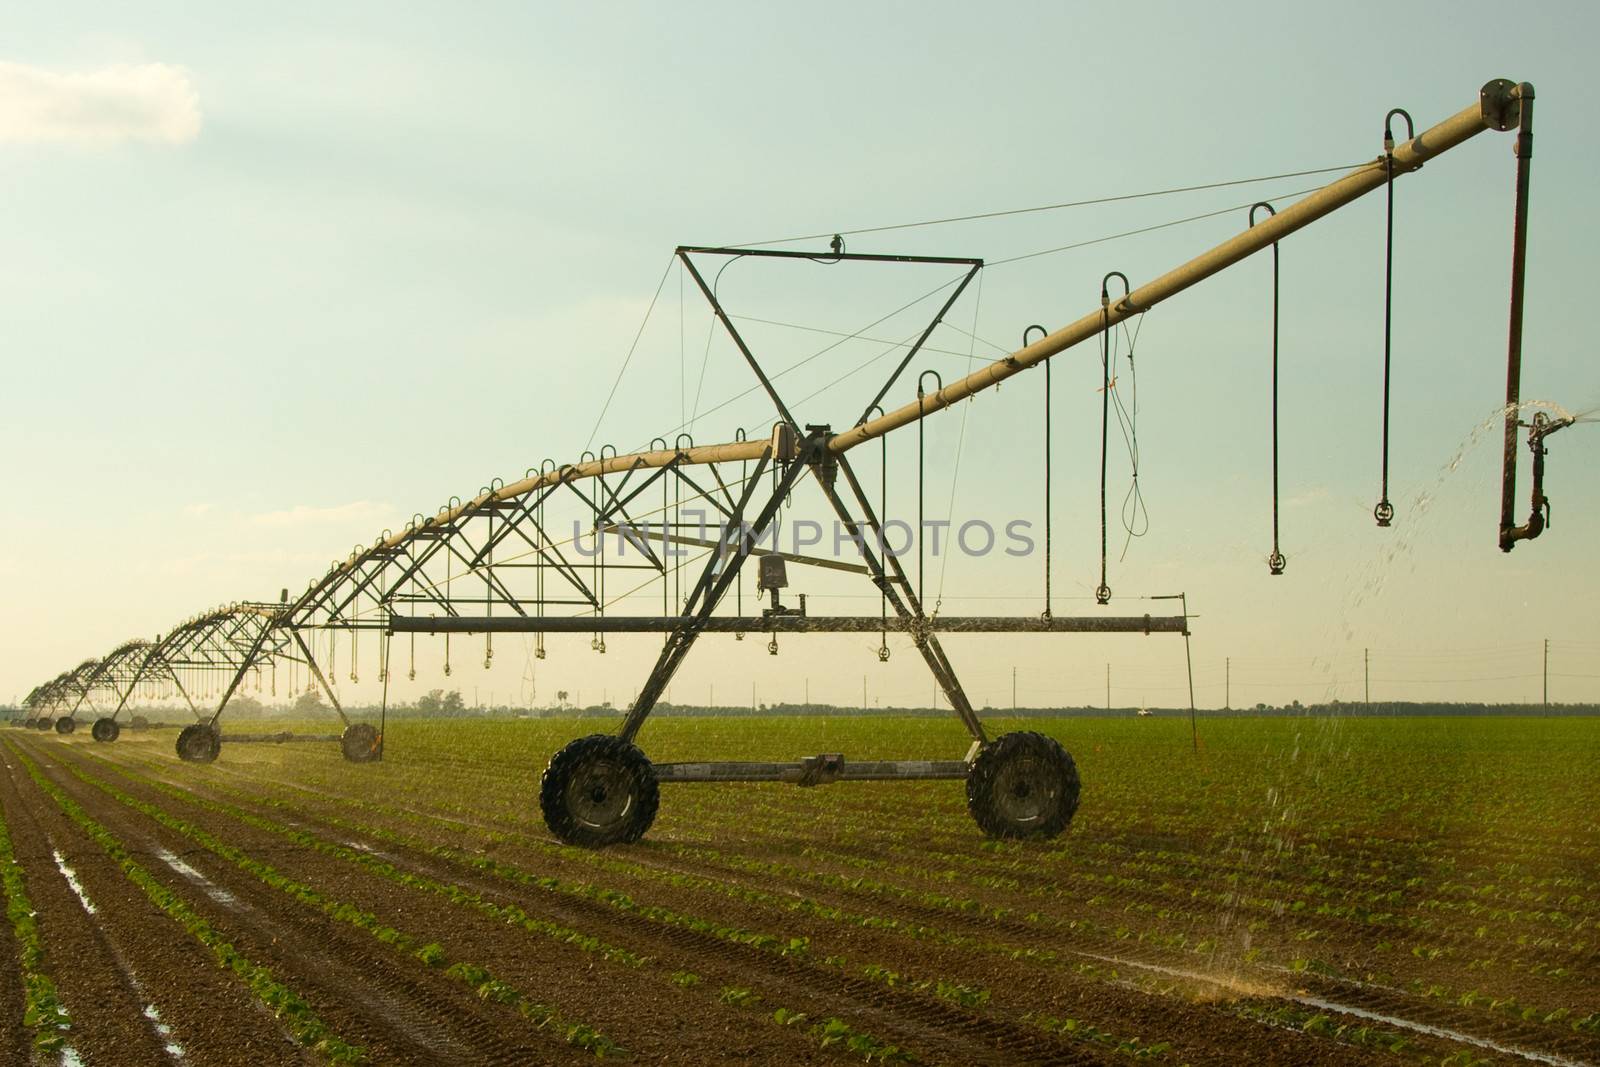 Farm irrigation by CelsoDiniz